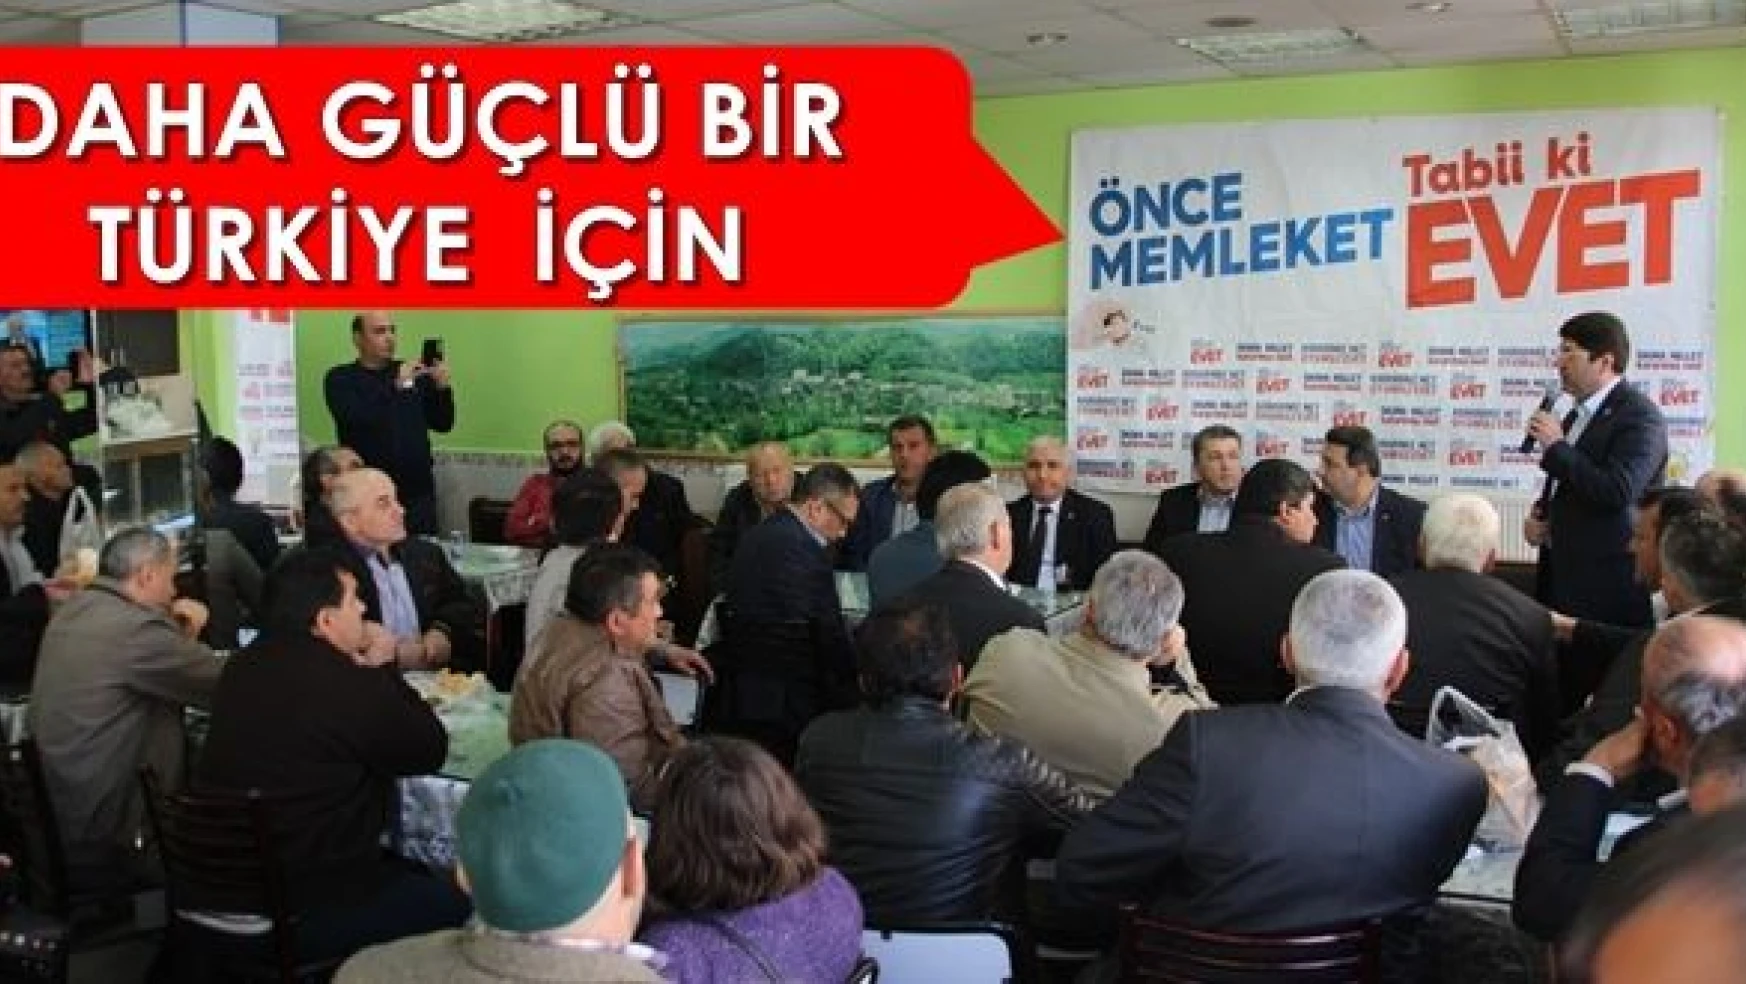 İstikrarla gelişen Türkiye için EVET diyeceğiz